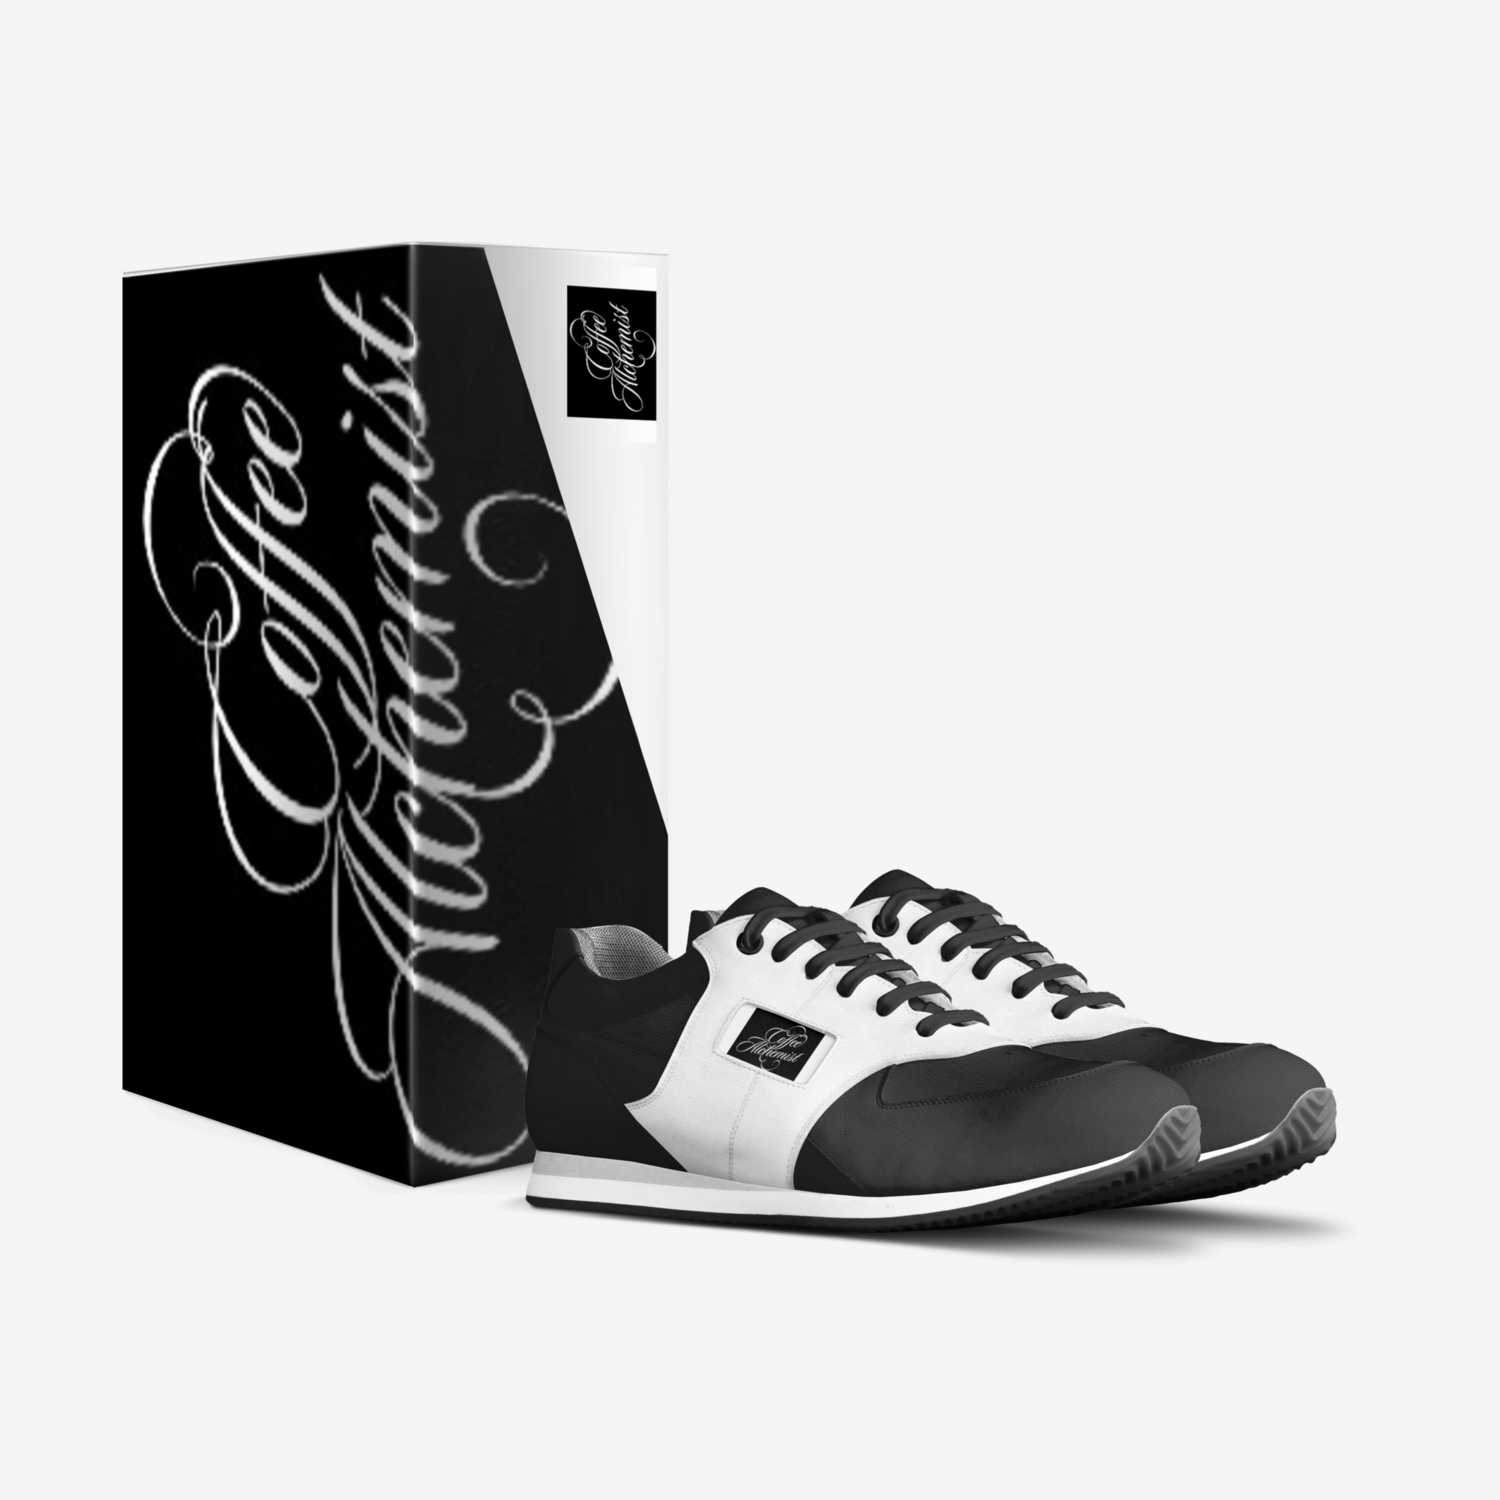 HOITY TOITY 3 custom made in Italy shoes by John Samano | Box view